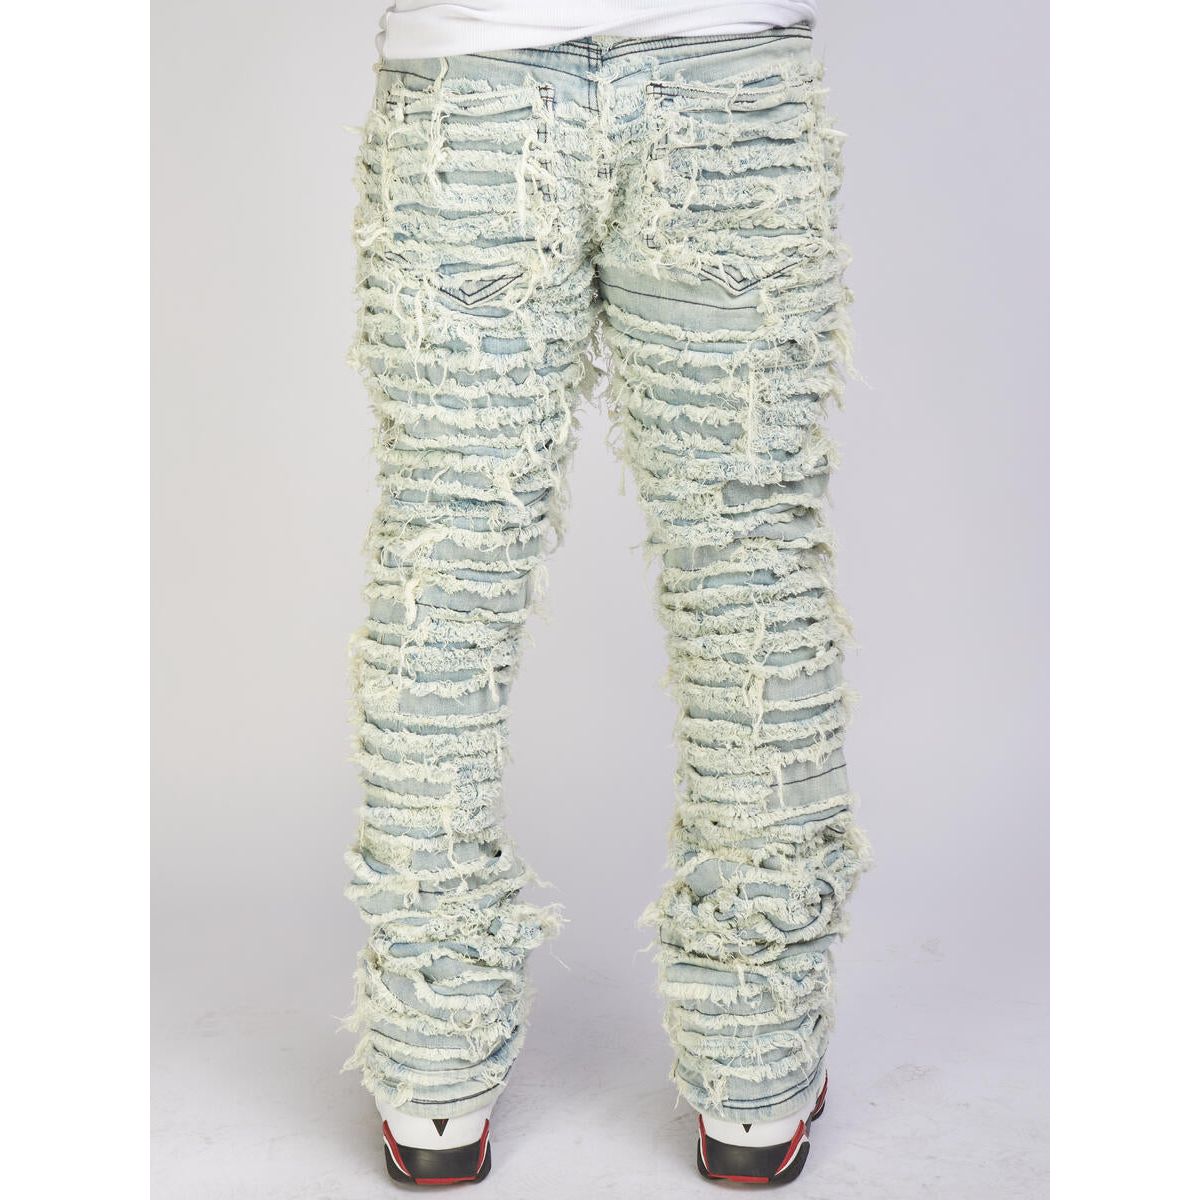 Politics Jeans Lightest Blue Thrashed Distressed Stacked Flare (Debris511)